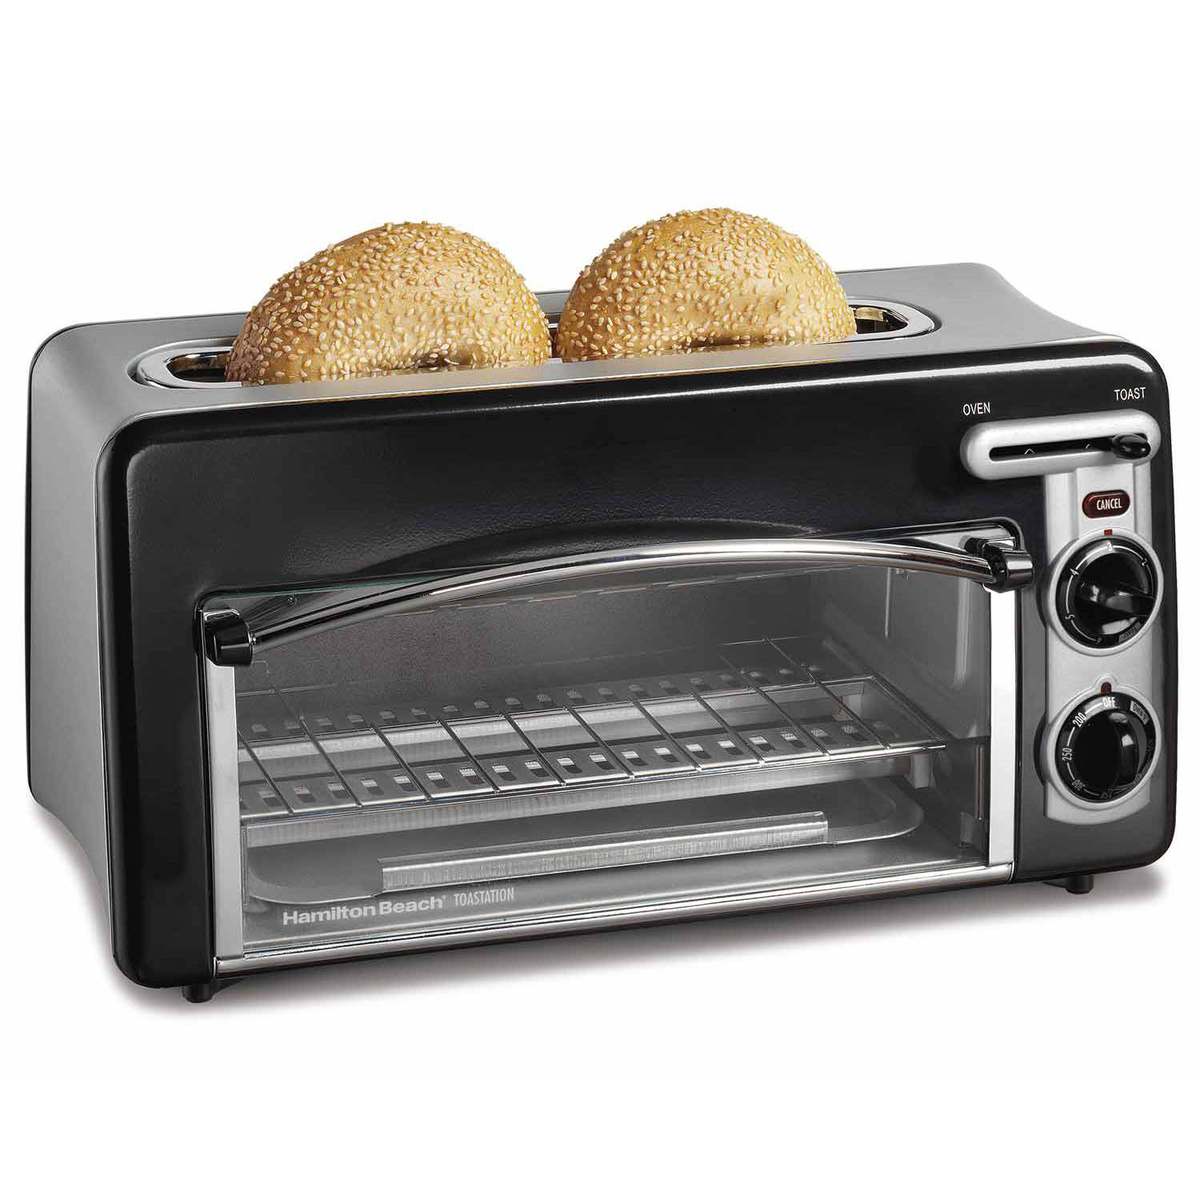 Toastation® Toaster & Oven - Black (22708)